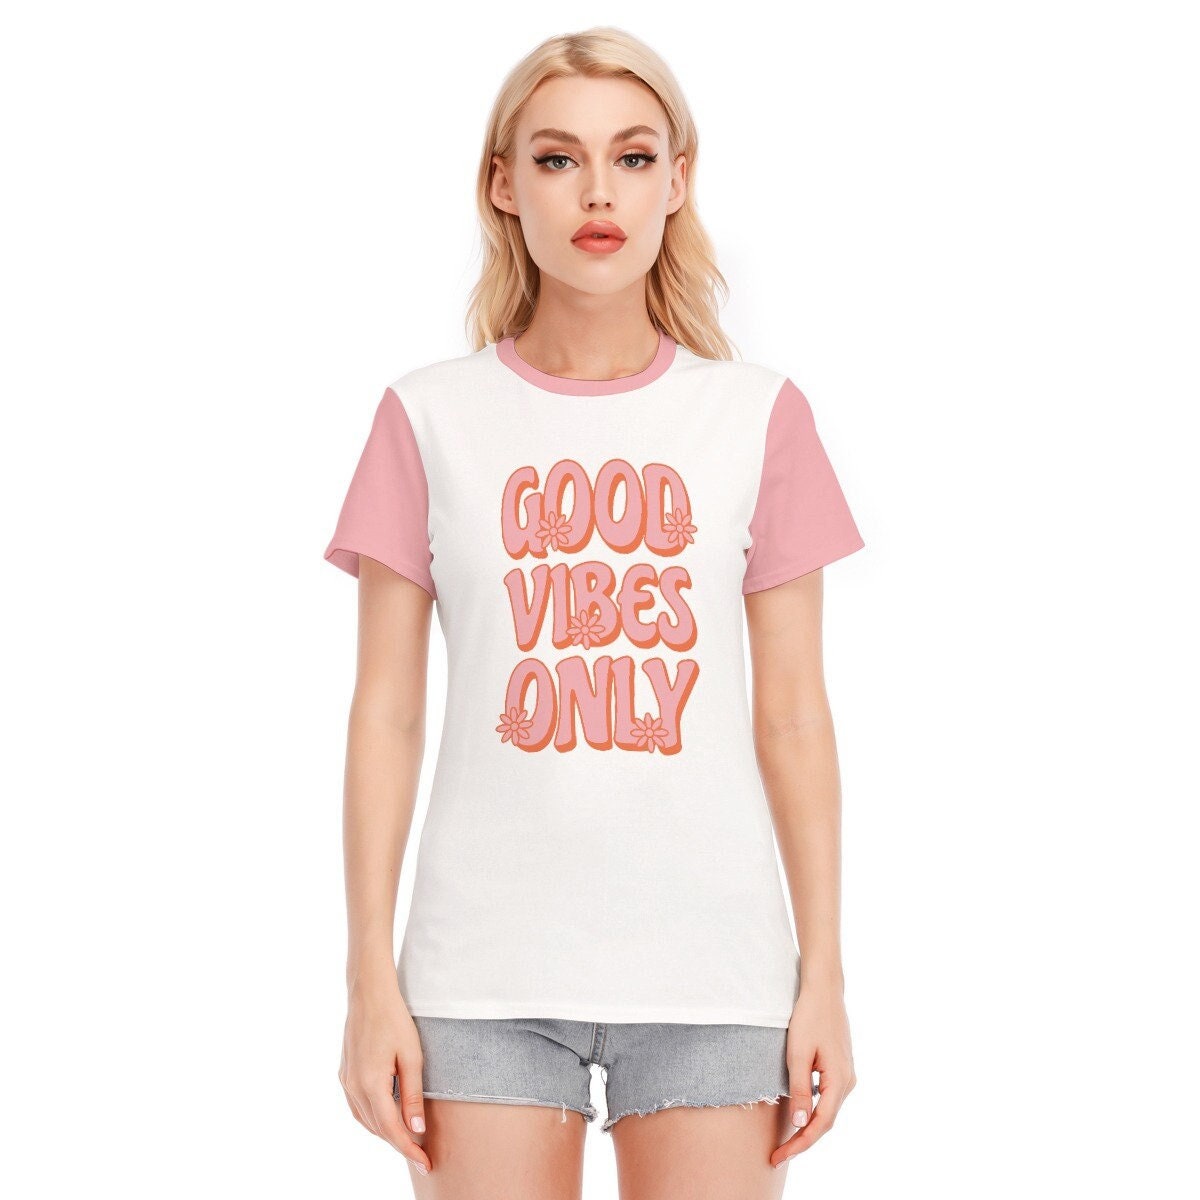 Retro T-shirt, Words Tshirts, Vintage Words Tshirt, Pink Words T-shirt, Hippie Tshirt Women, Vintage Style Tshirt, White Pink T-shirt